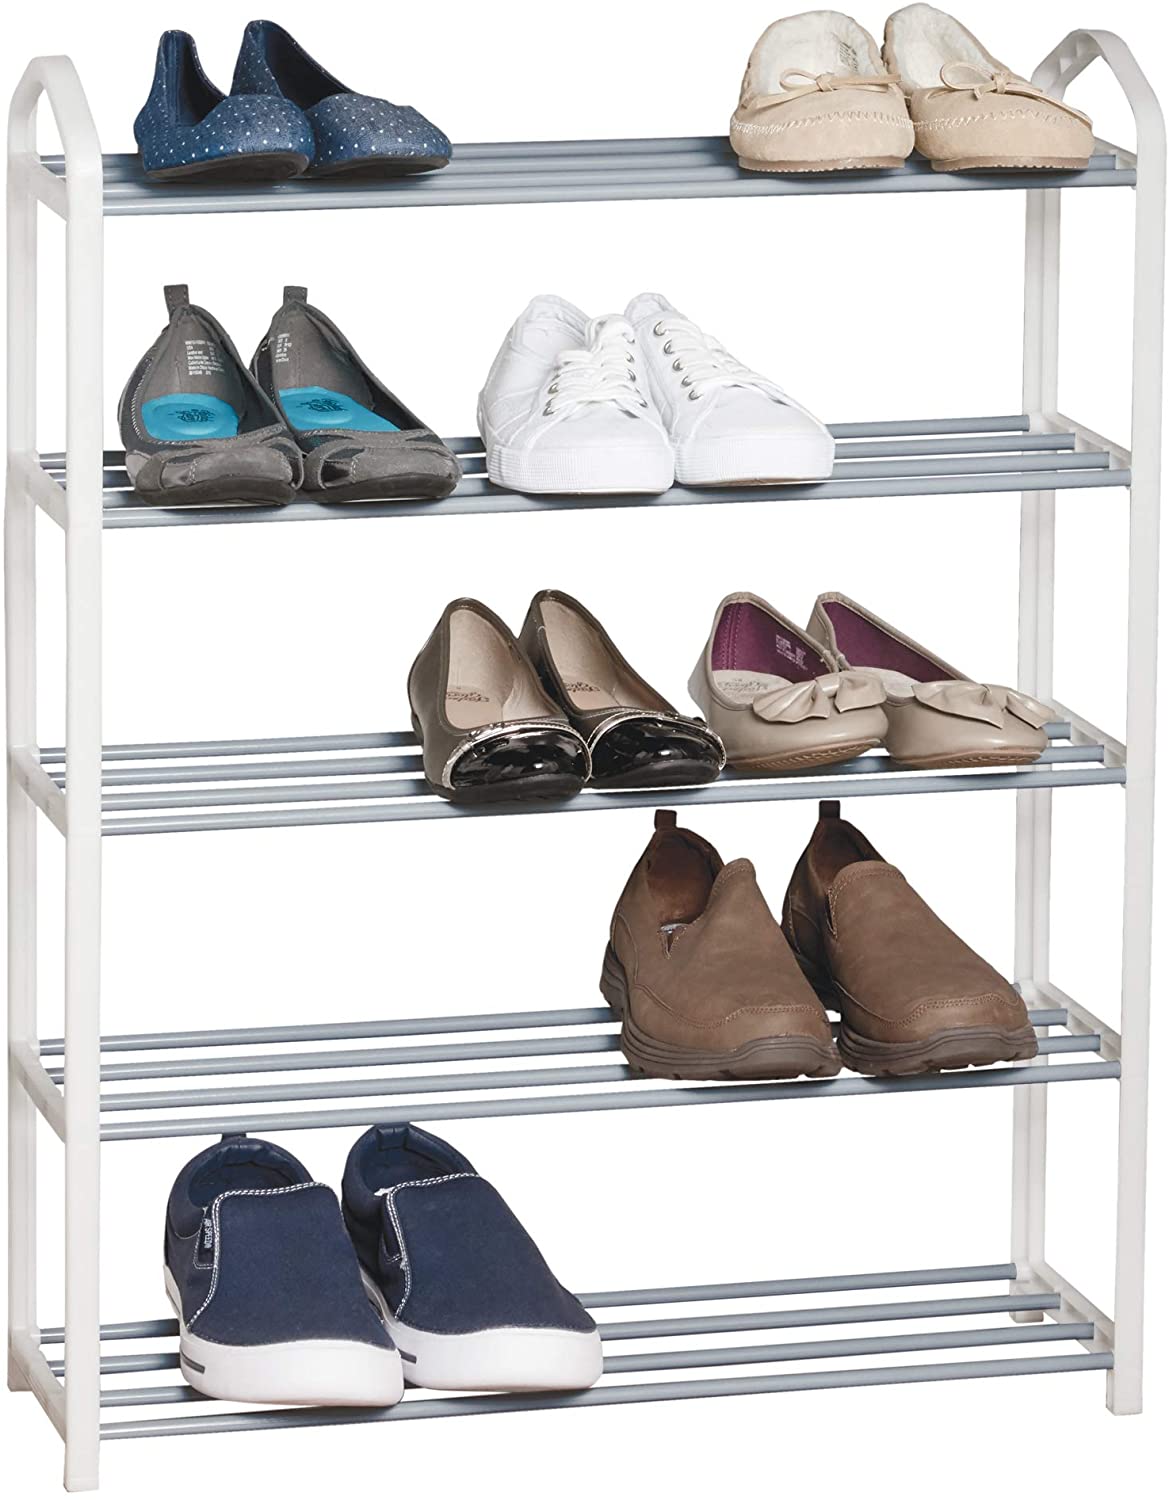 https://www.shopsmartdesign.com/cdn/shop/products/5-tier-steel-shoe-rack-smart-design-storage-5585112-200-incrementing-number-168957.jpg?v=1679345761